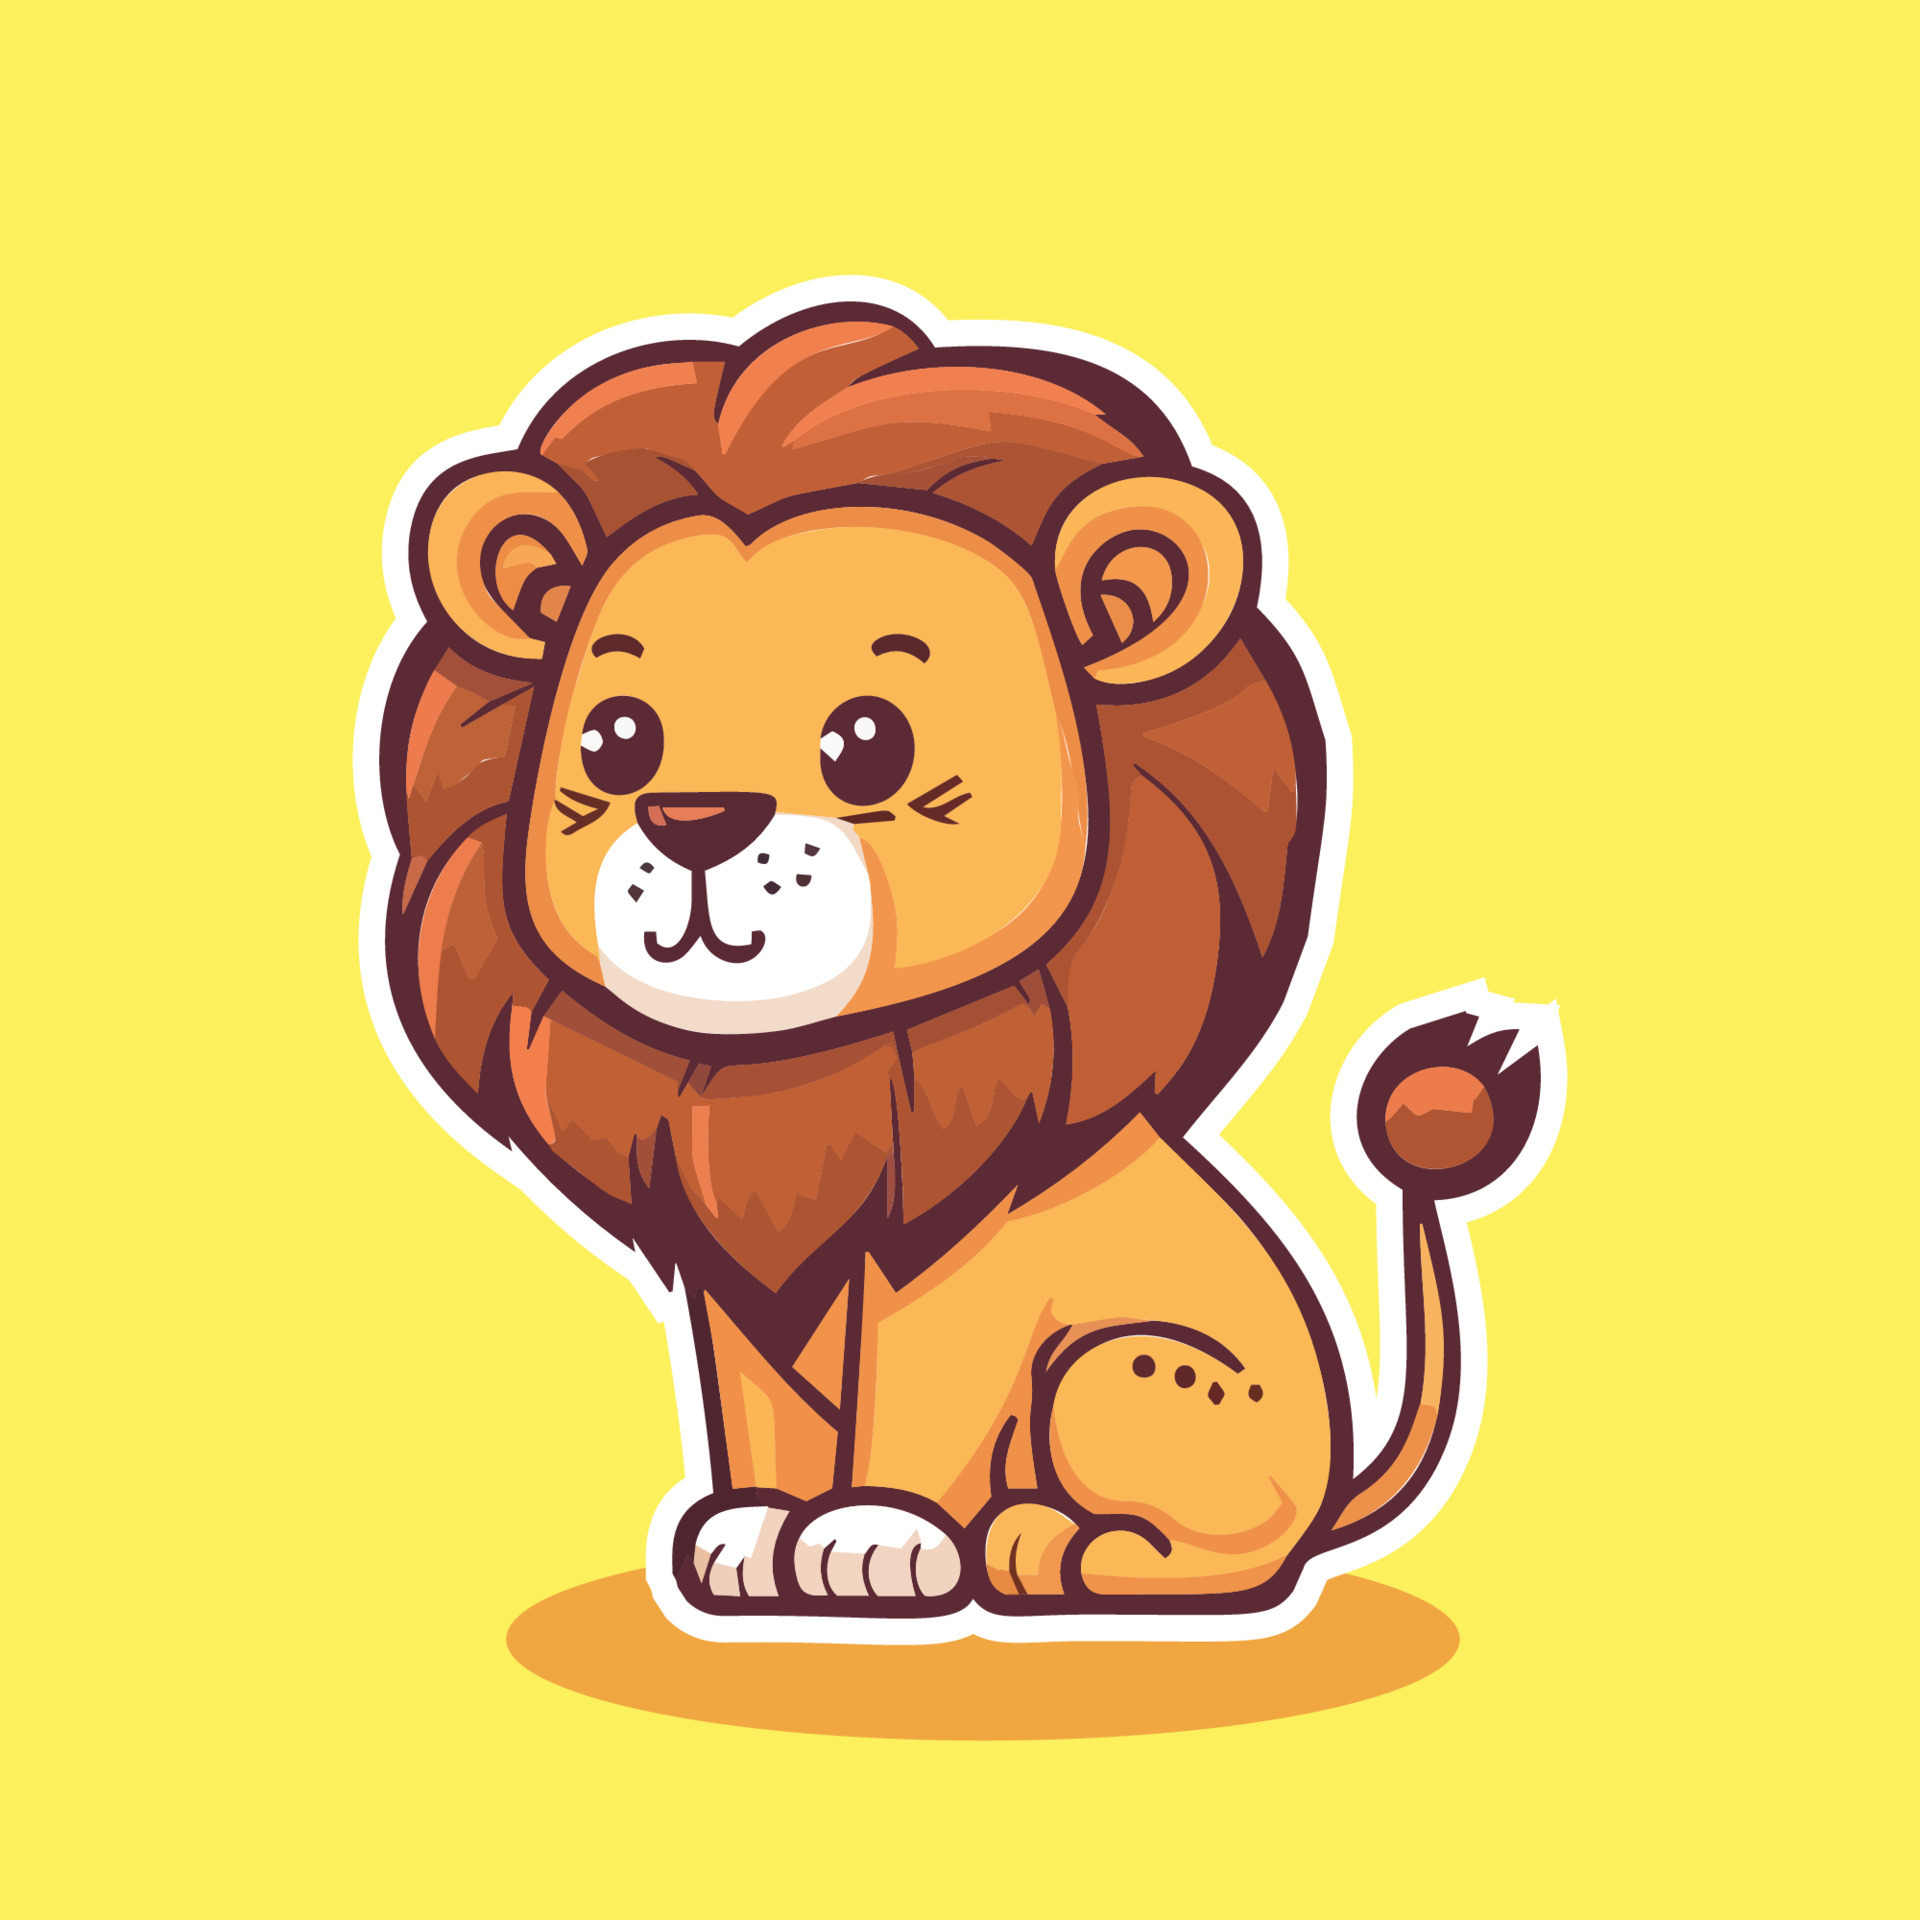 Cartoon Lion Drawing - How To Draw A Cartoon Lion Step By Step-saigonsouth.com.vn